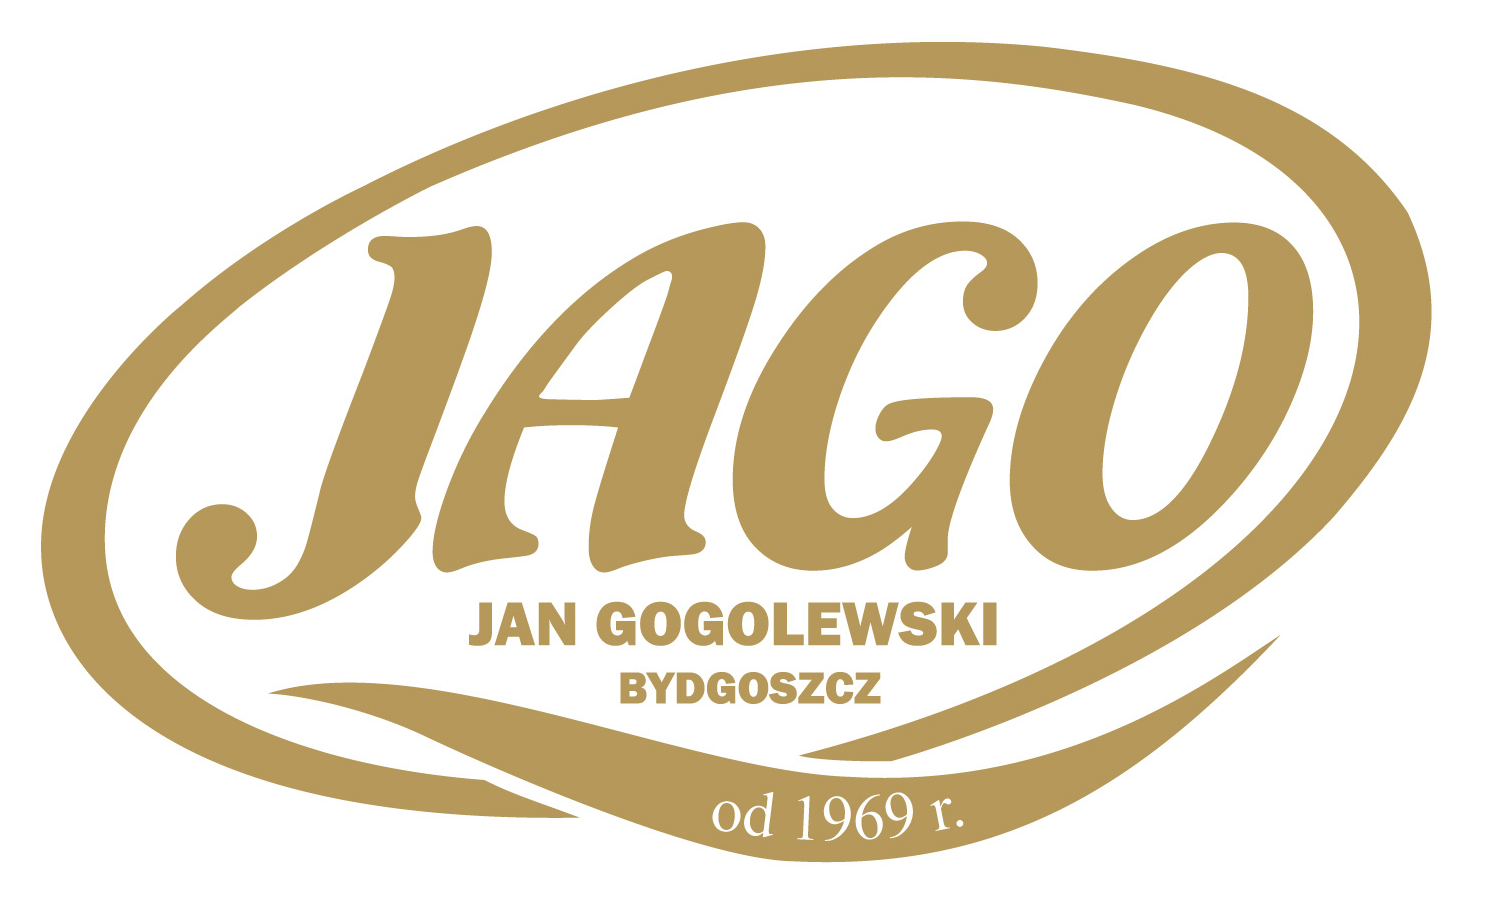 Jago